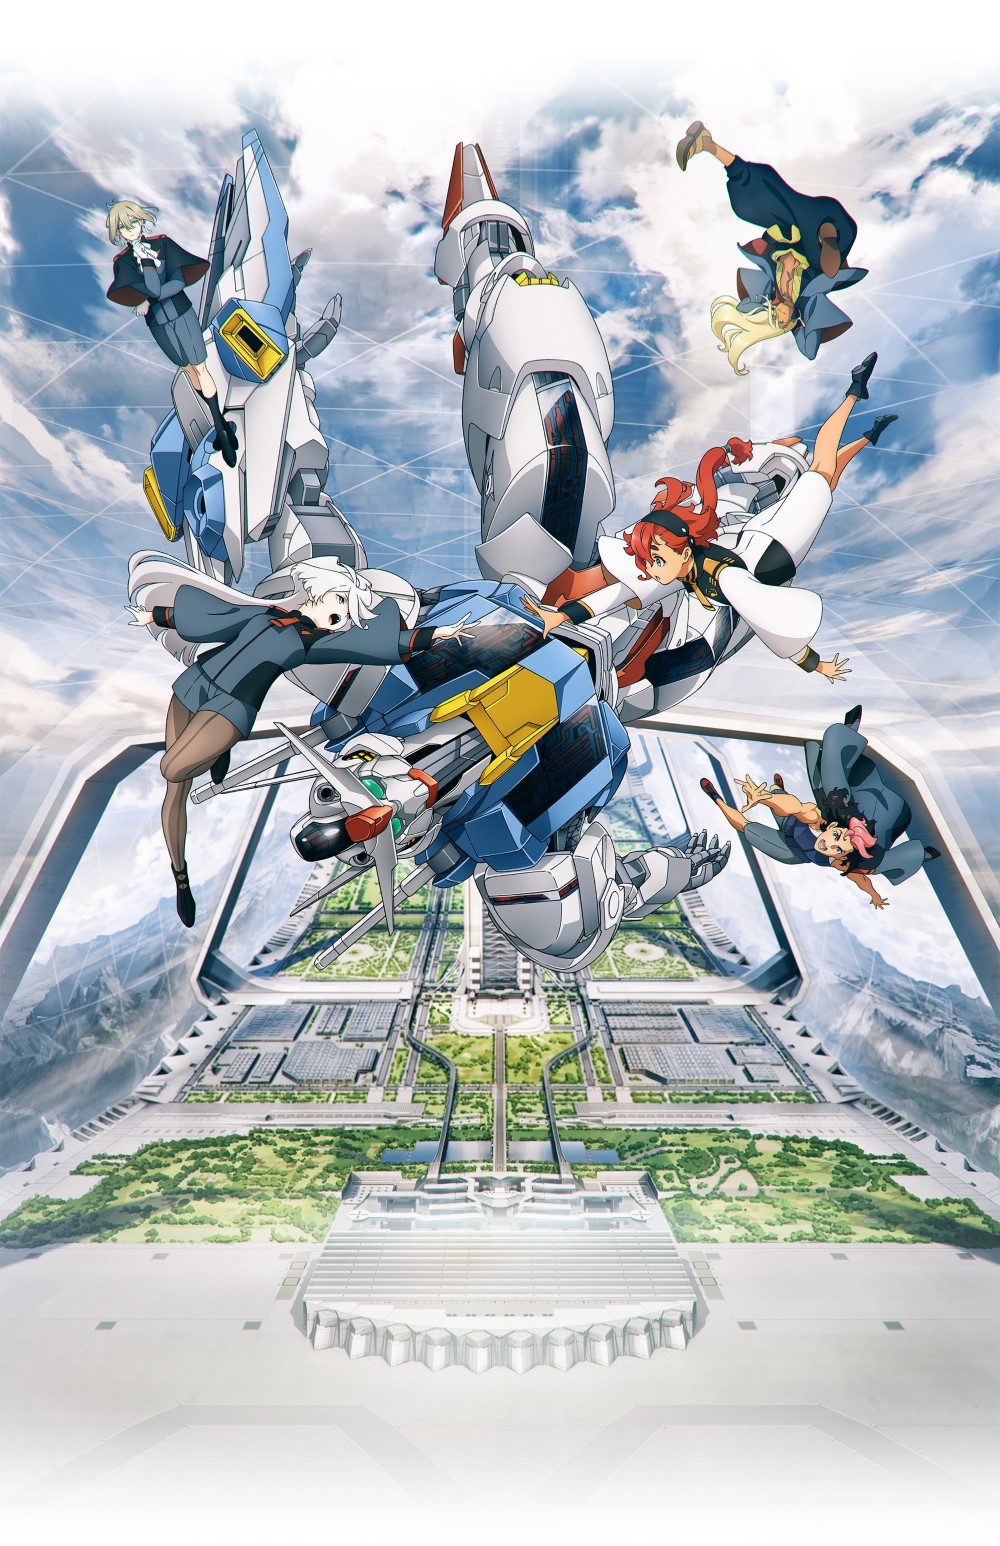 【喵萌奶茶屋】[機動戰士鋼彈 水星的魔女 序幕/Mobile Suit Gundam THE WITCH FROM MERCURY PROLOGUE][先行版][1080p][繁體][v2][招募翻譯]插图icecomic动漫-云之彼端,约定的地方(´･ᴗ･`)